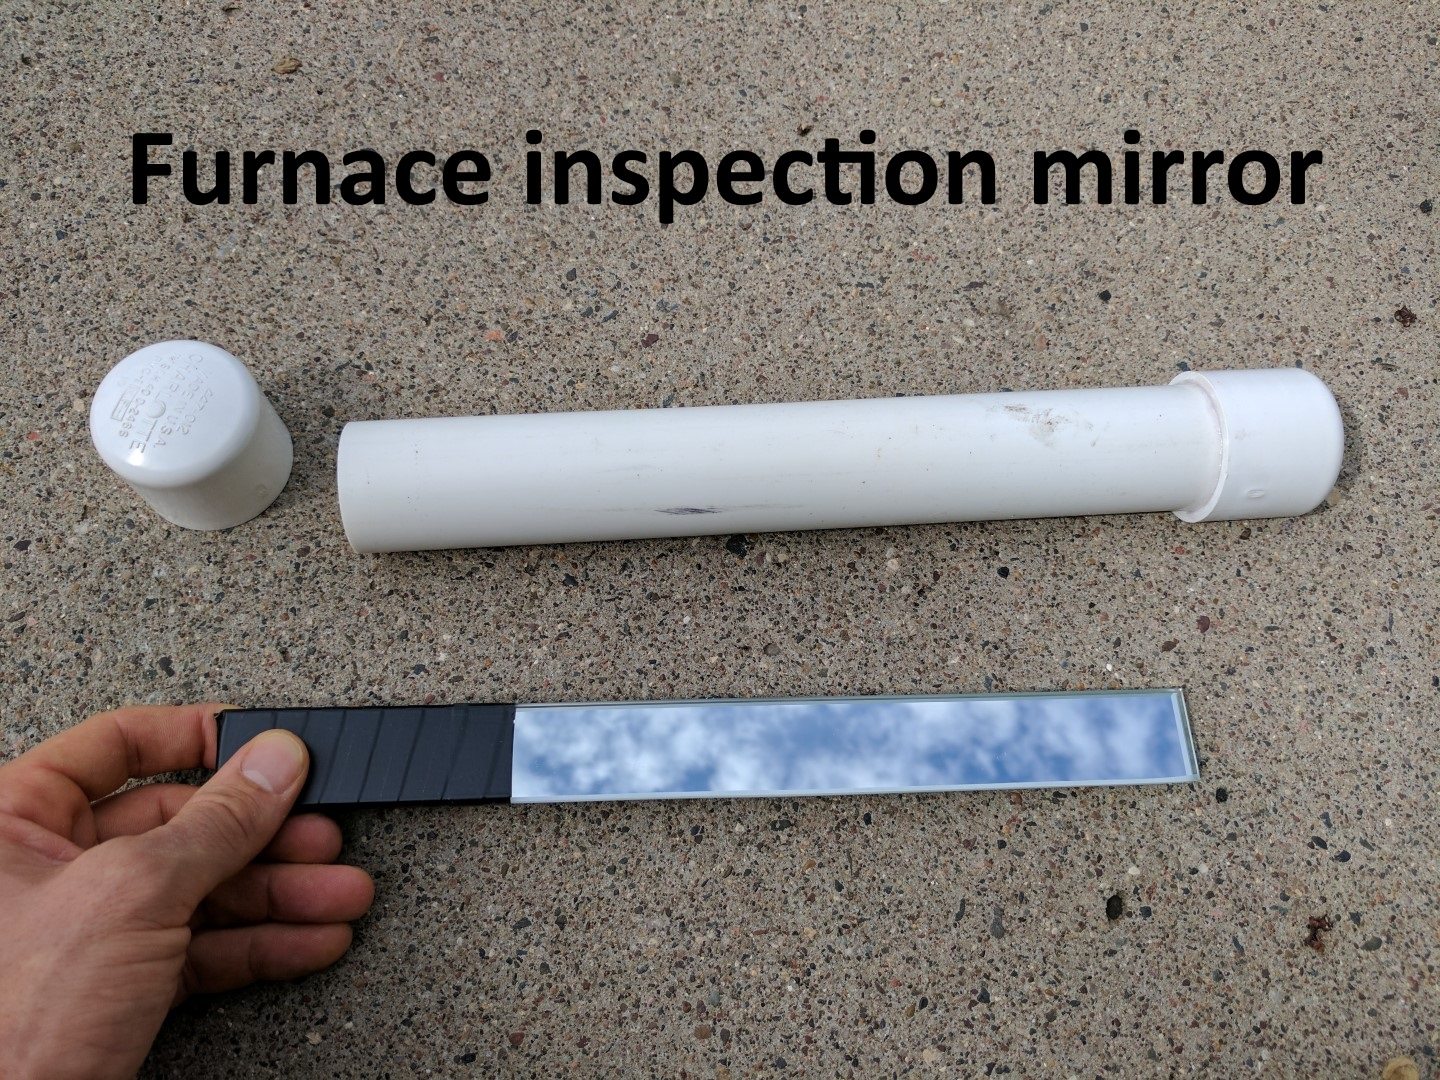 http://structuretech1.com/wp-content/uploads/2017/05/Furnace-inspection-mirror-2.jpg